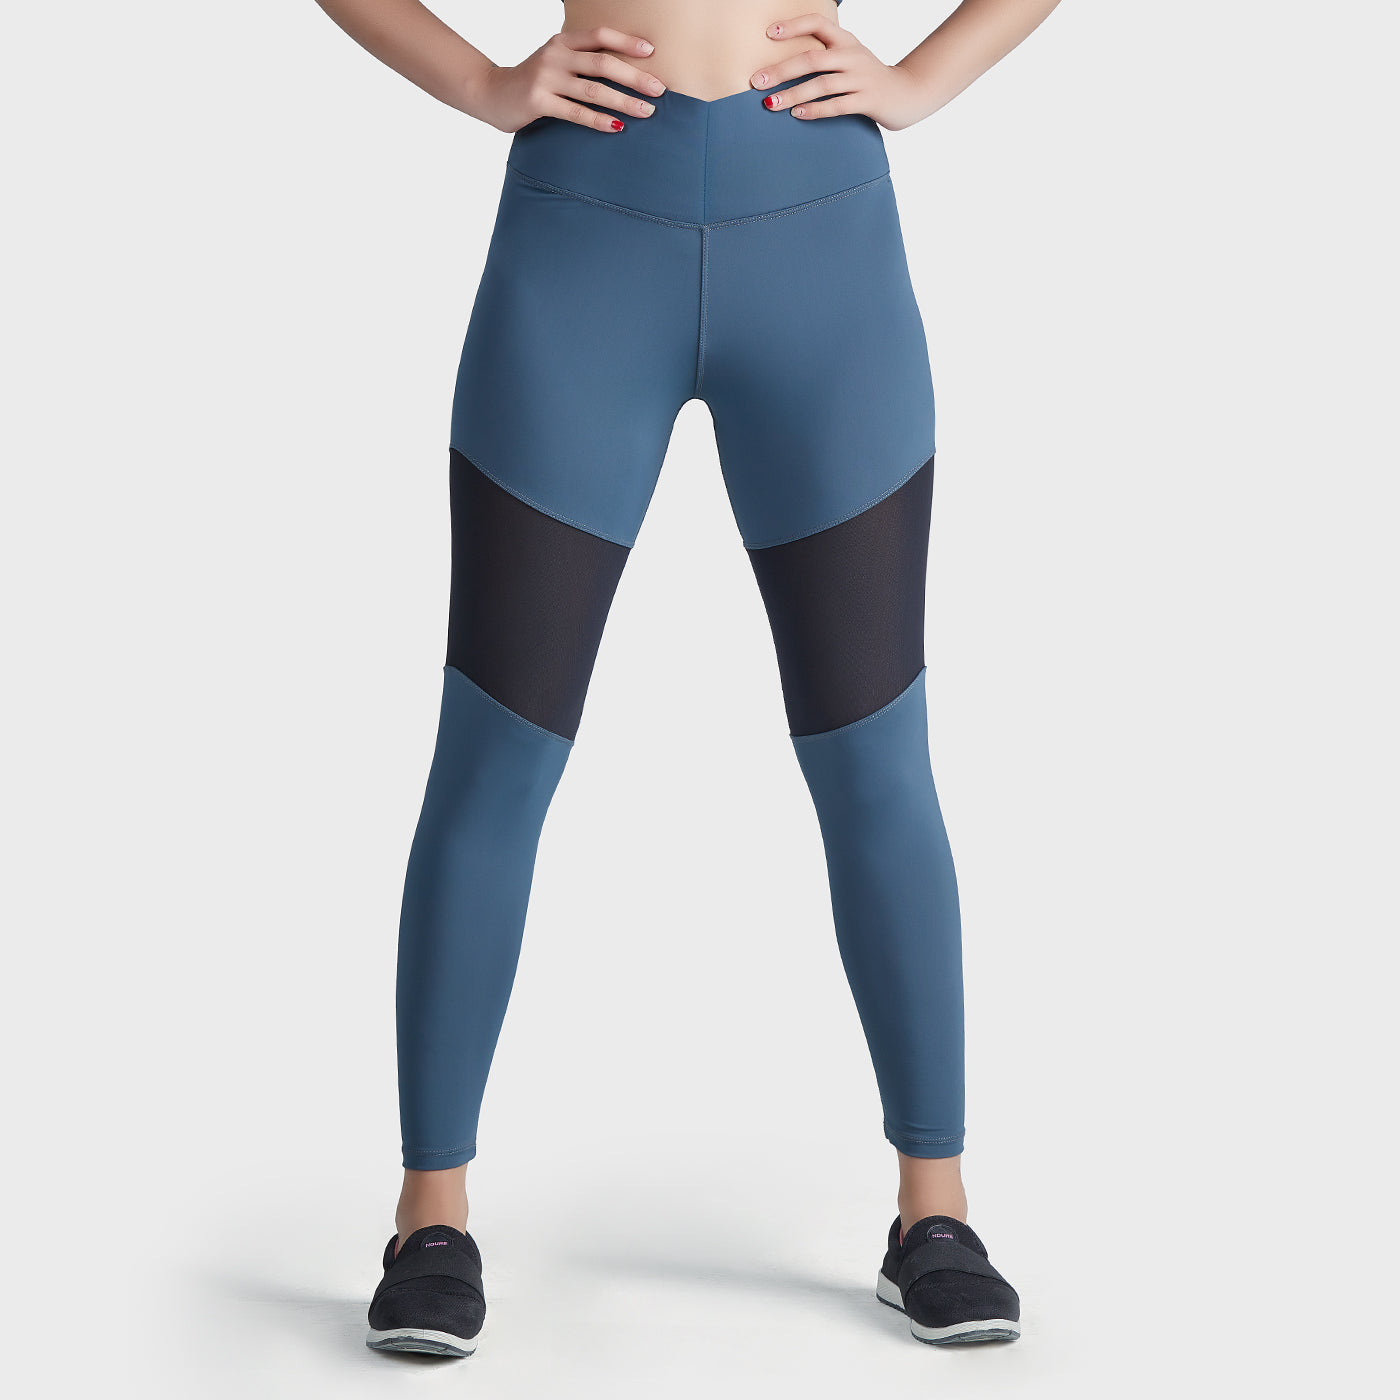 Women's Sports Wear BY NDURE  Sports Bra - Leggings - Yoga Pants